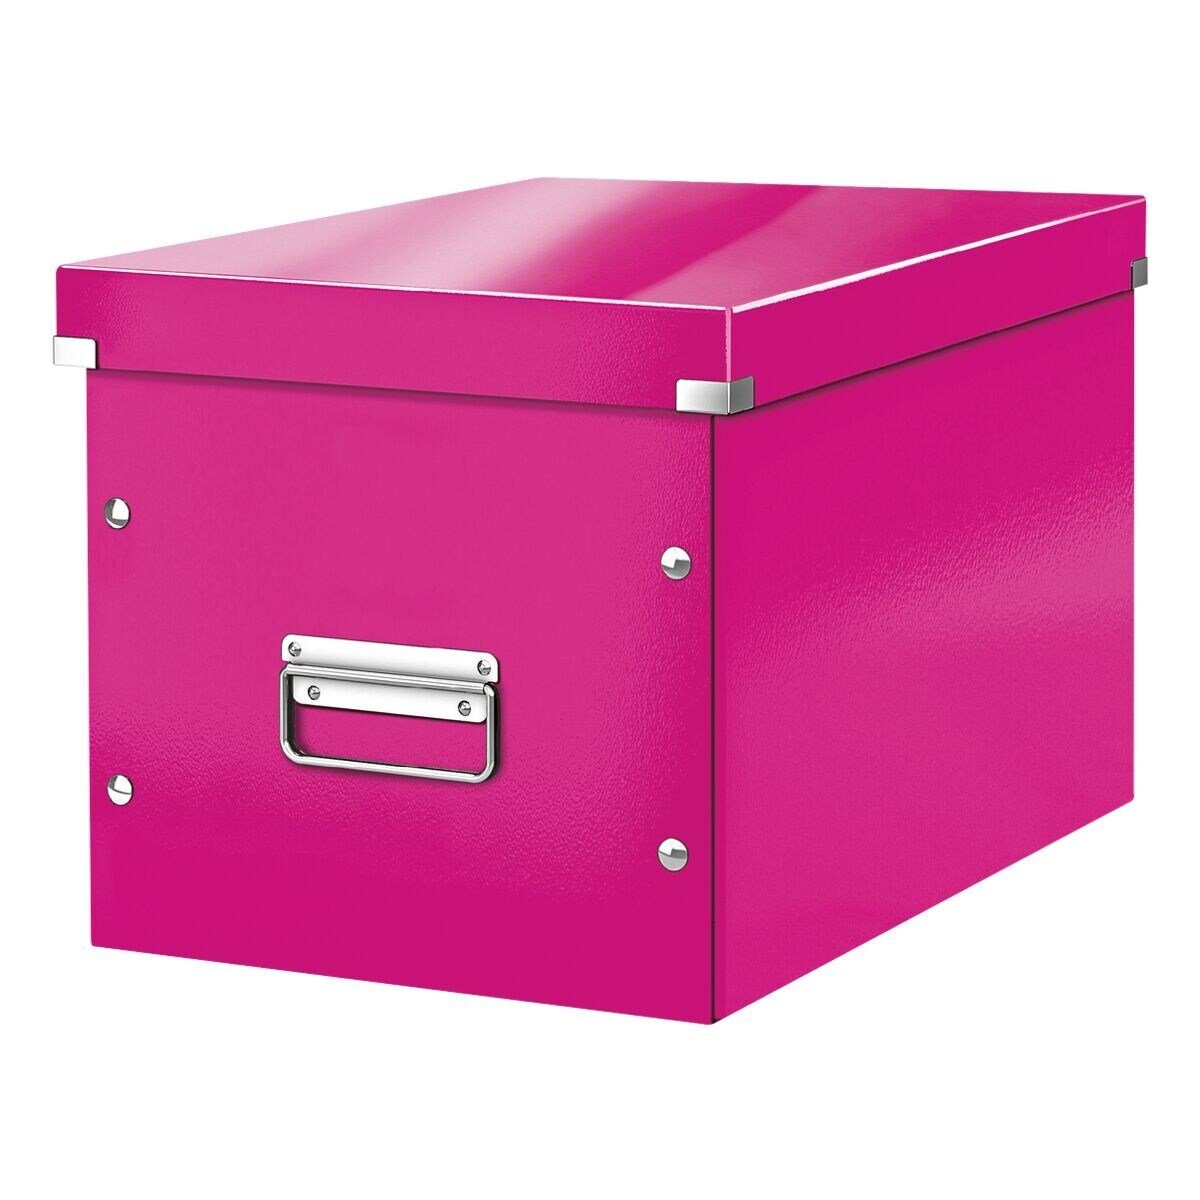 LEITZ Aufbewahrungsbox Click & Store Cube, passend für Standardmöbel mit kubischen Fächern